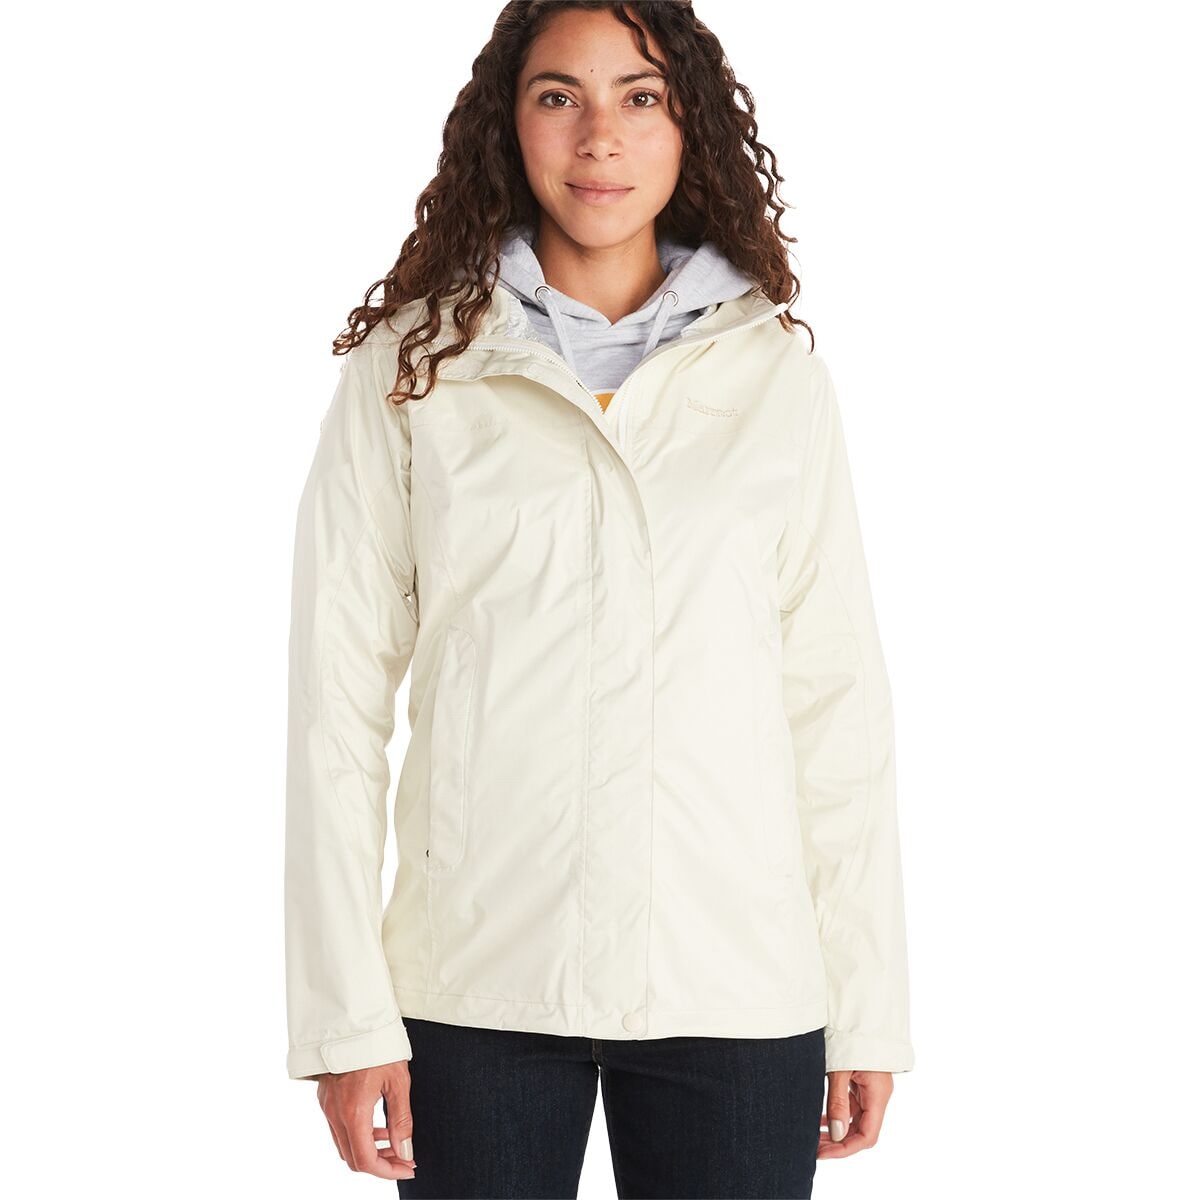 Marmot PreCip Eco Jacket - Women's - Clothing